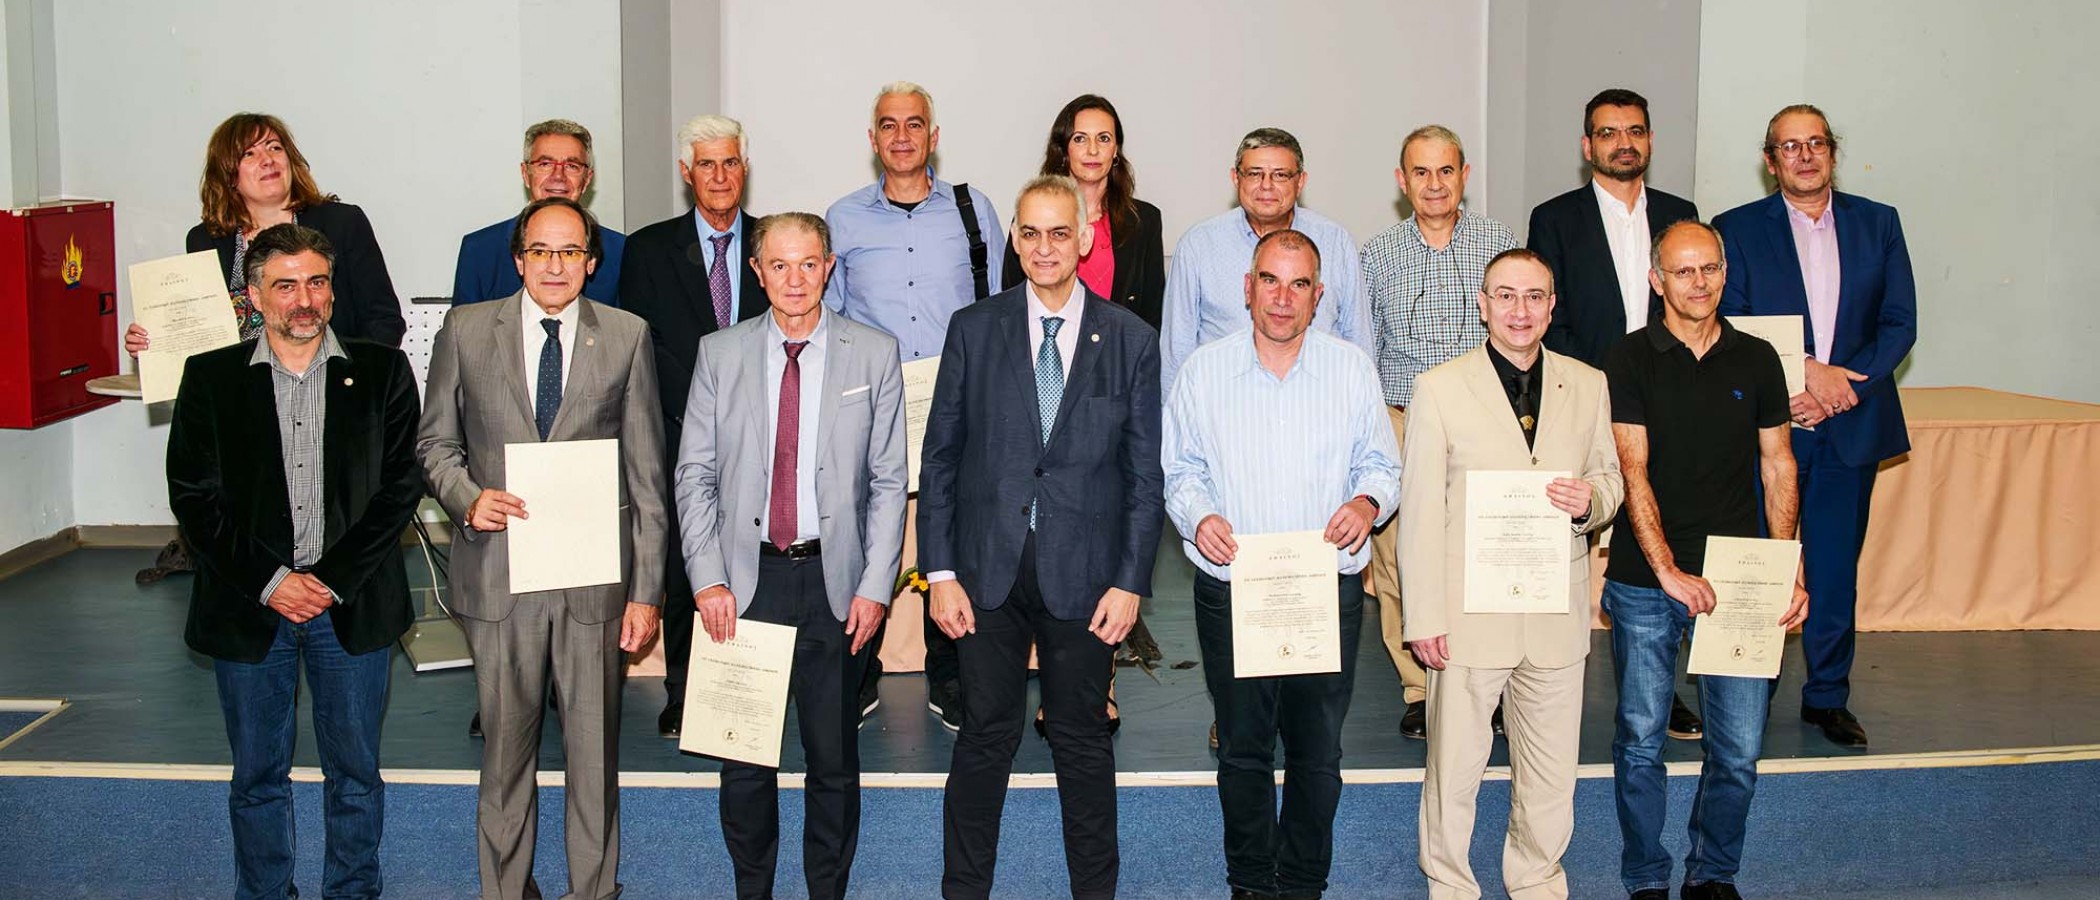 Είκοσι τέσσερα μέλη του Γεωπονικού Πανεπιστημίου Αθηνών βραβεύονται ως κορυφαίοι επιστήμονες σε παγκόσμιο επίπεδο